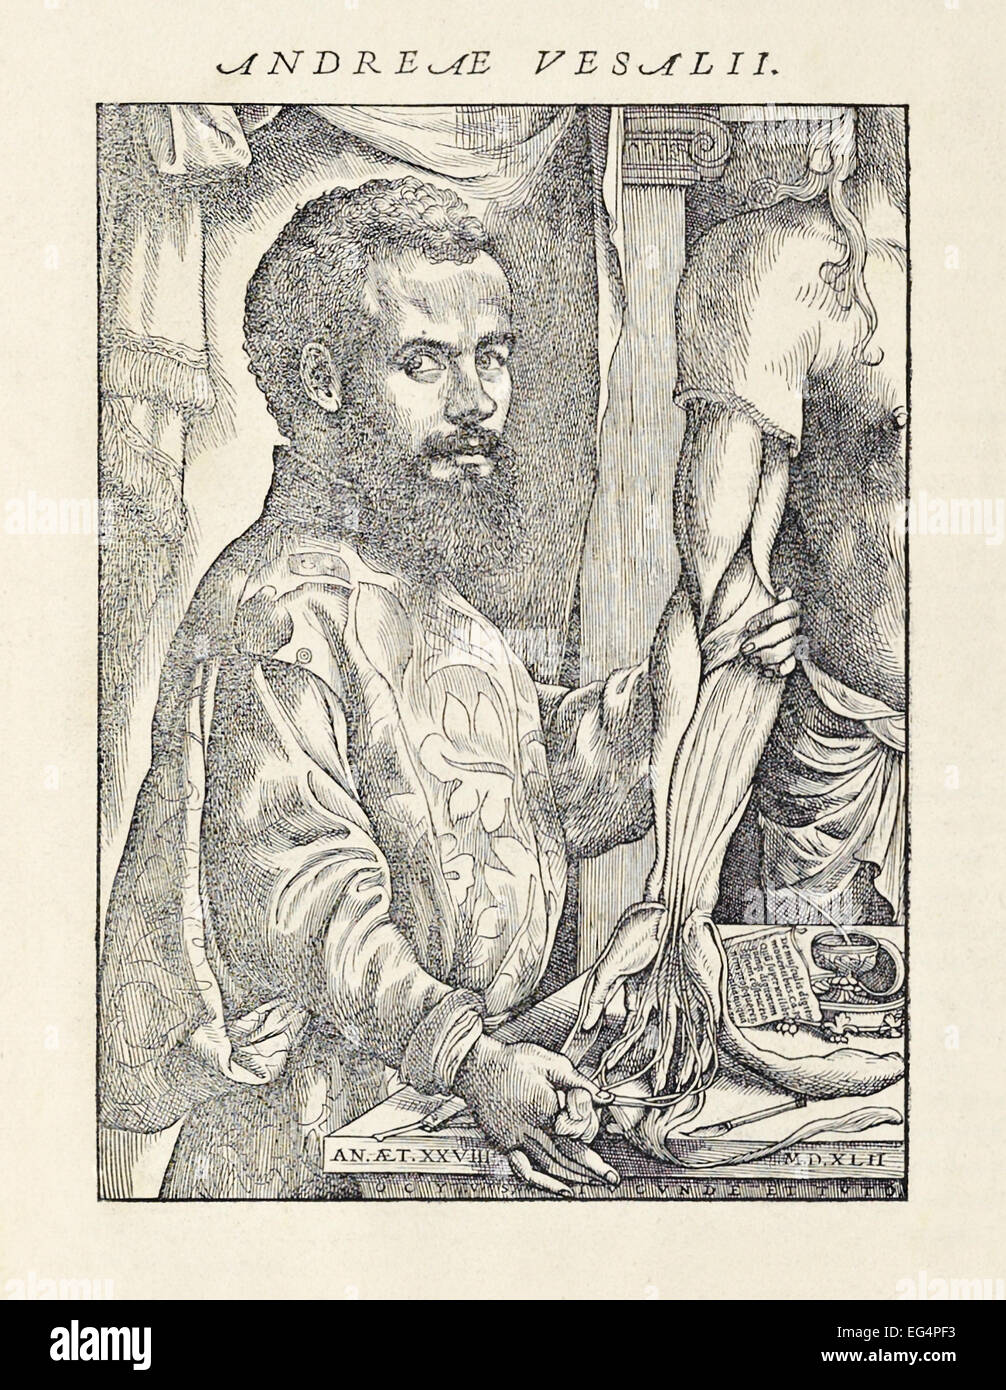 Holzschnitt-Porträt von Andreas Vesalius (1514-1564) mit seziert Kadaver aus seinem Buch "De Humani Corporis Fabrica Libri Septem" veröffentlichte im Jahre 1543. Siehe Beschreibung für mehr Informationen. Stockfoto